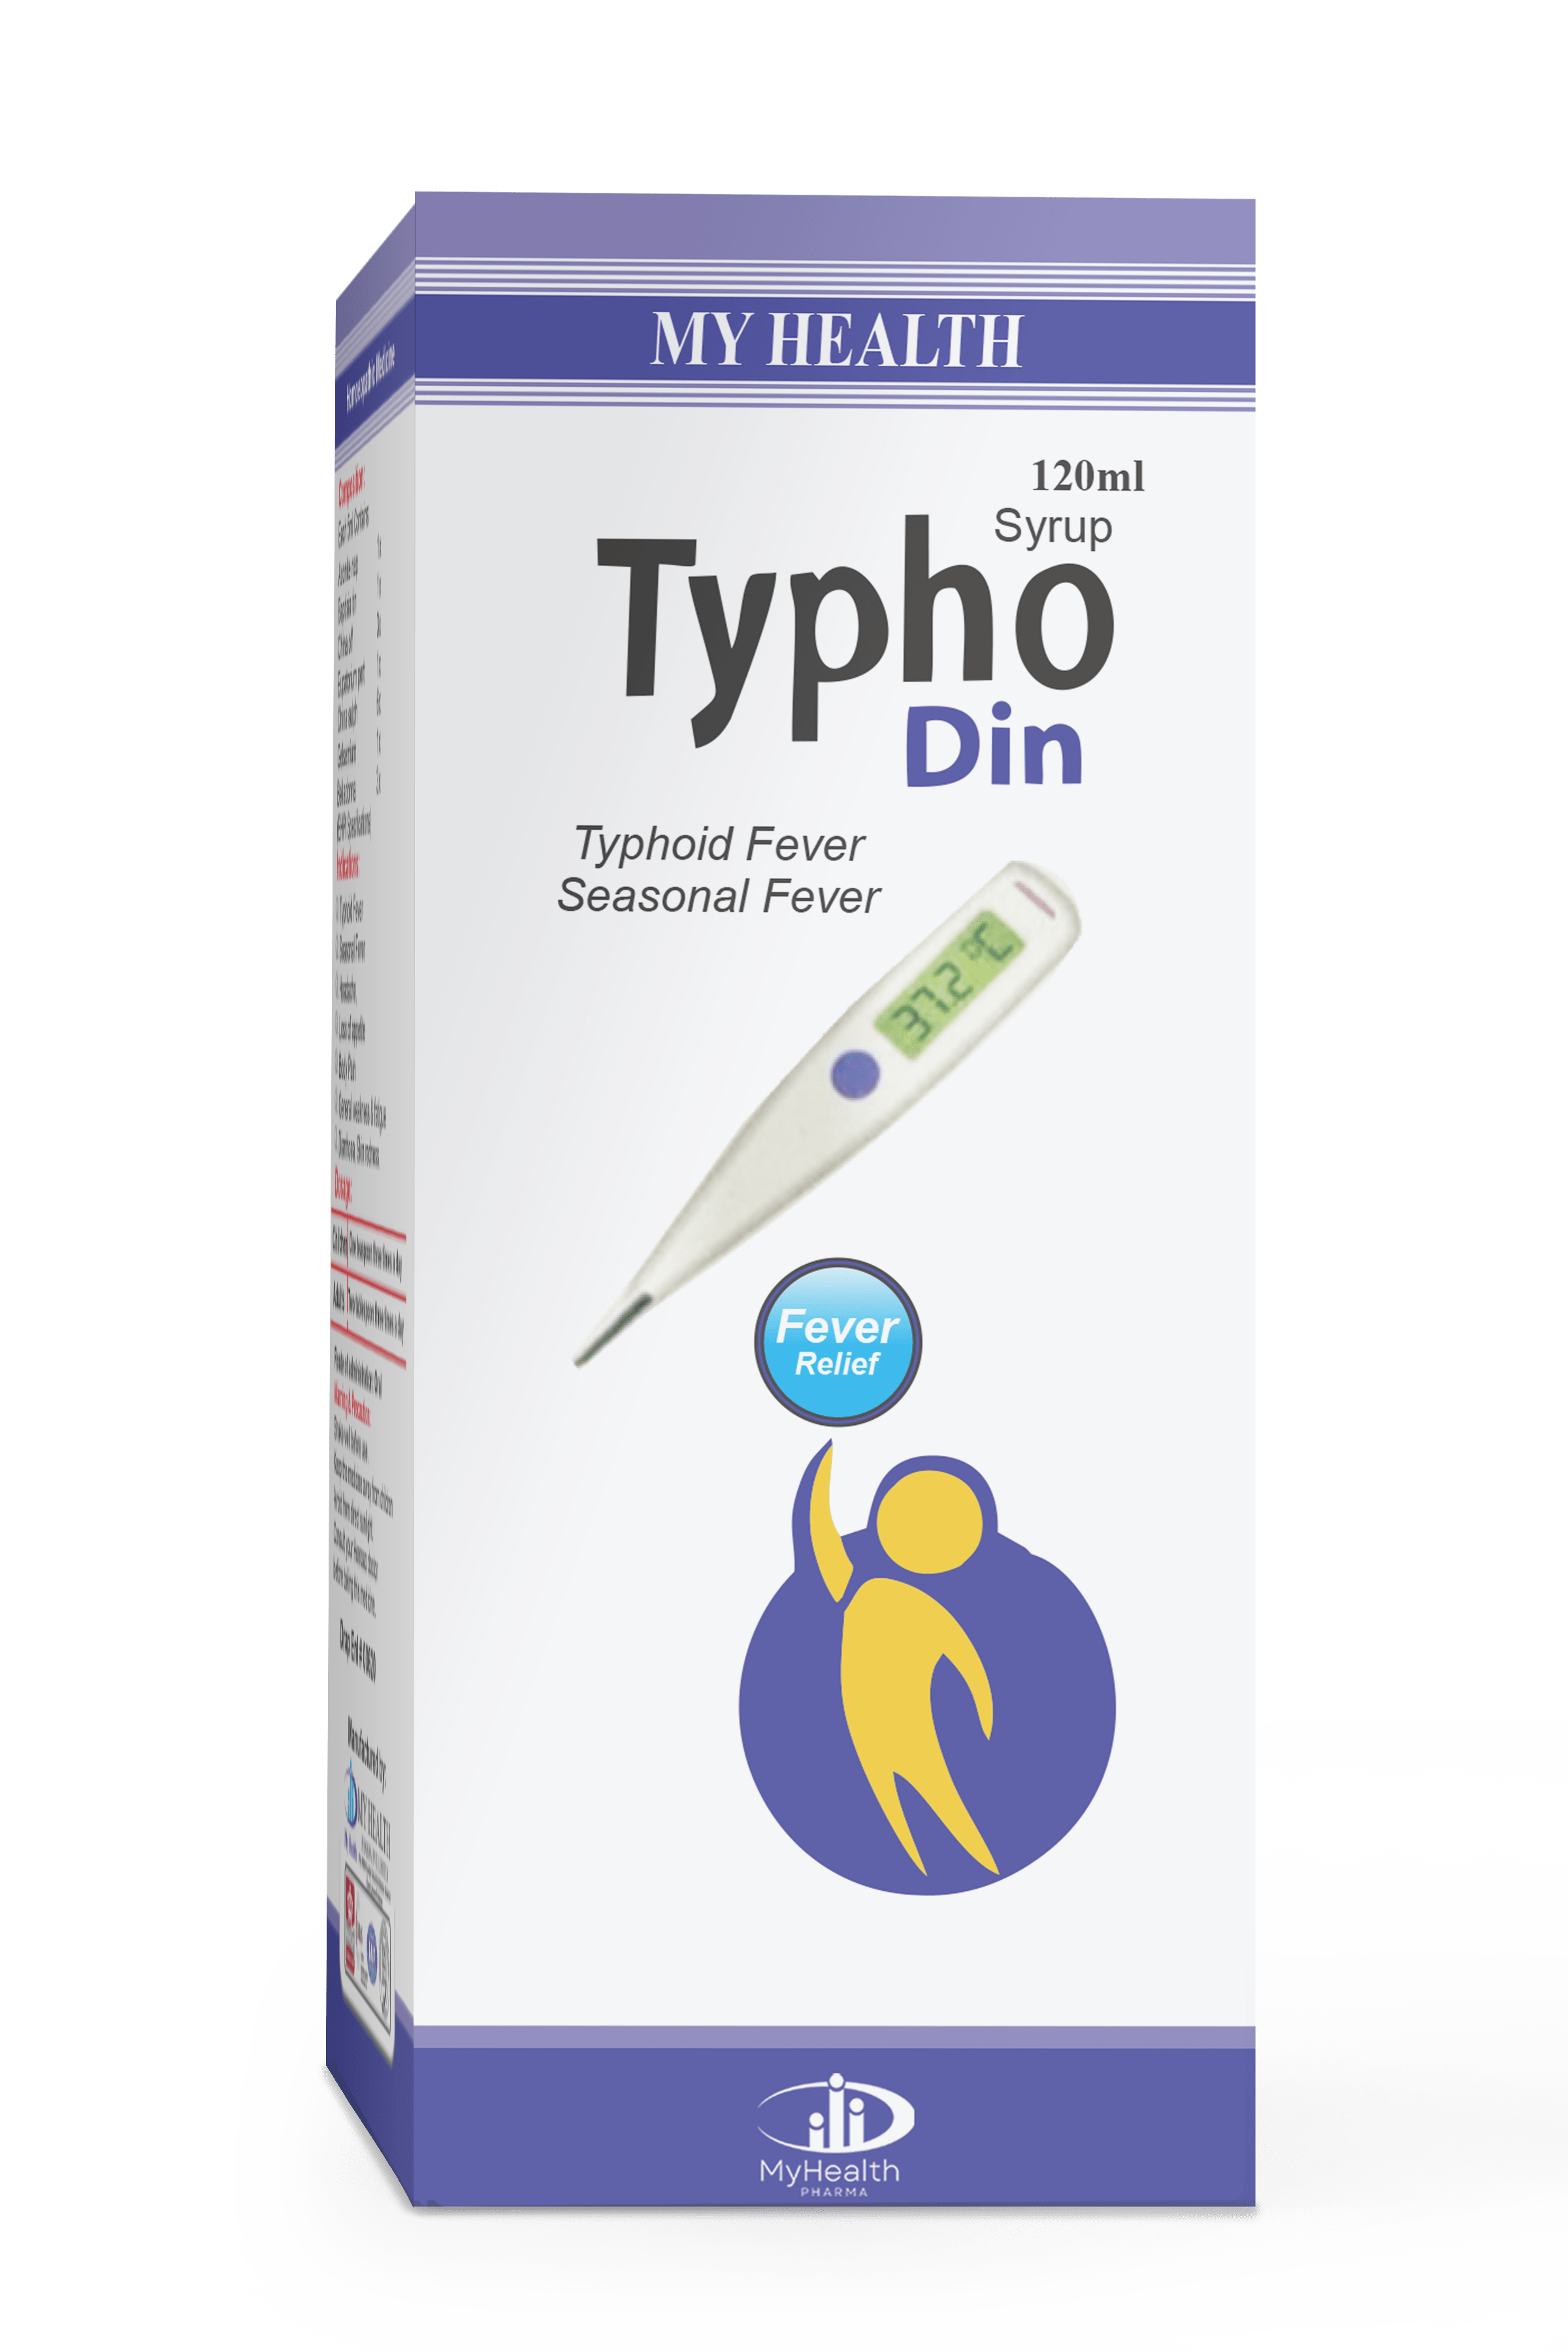 Typho Din